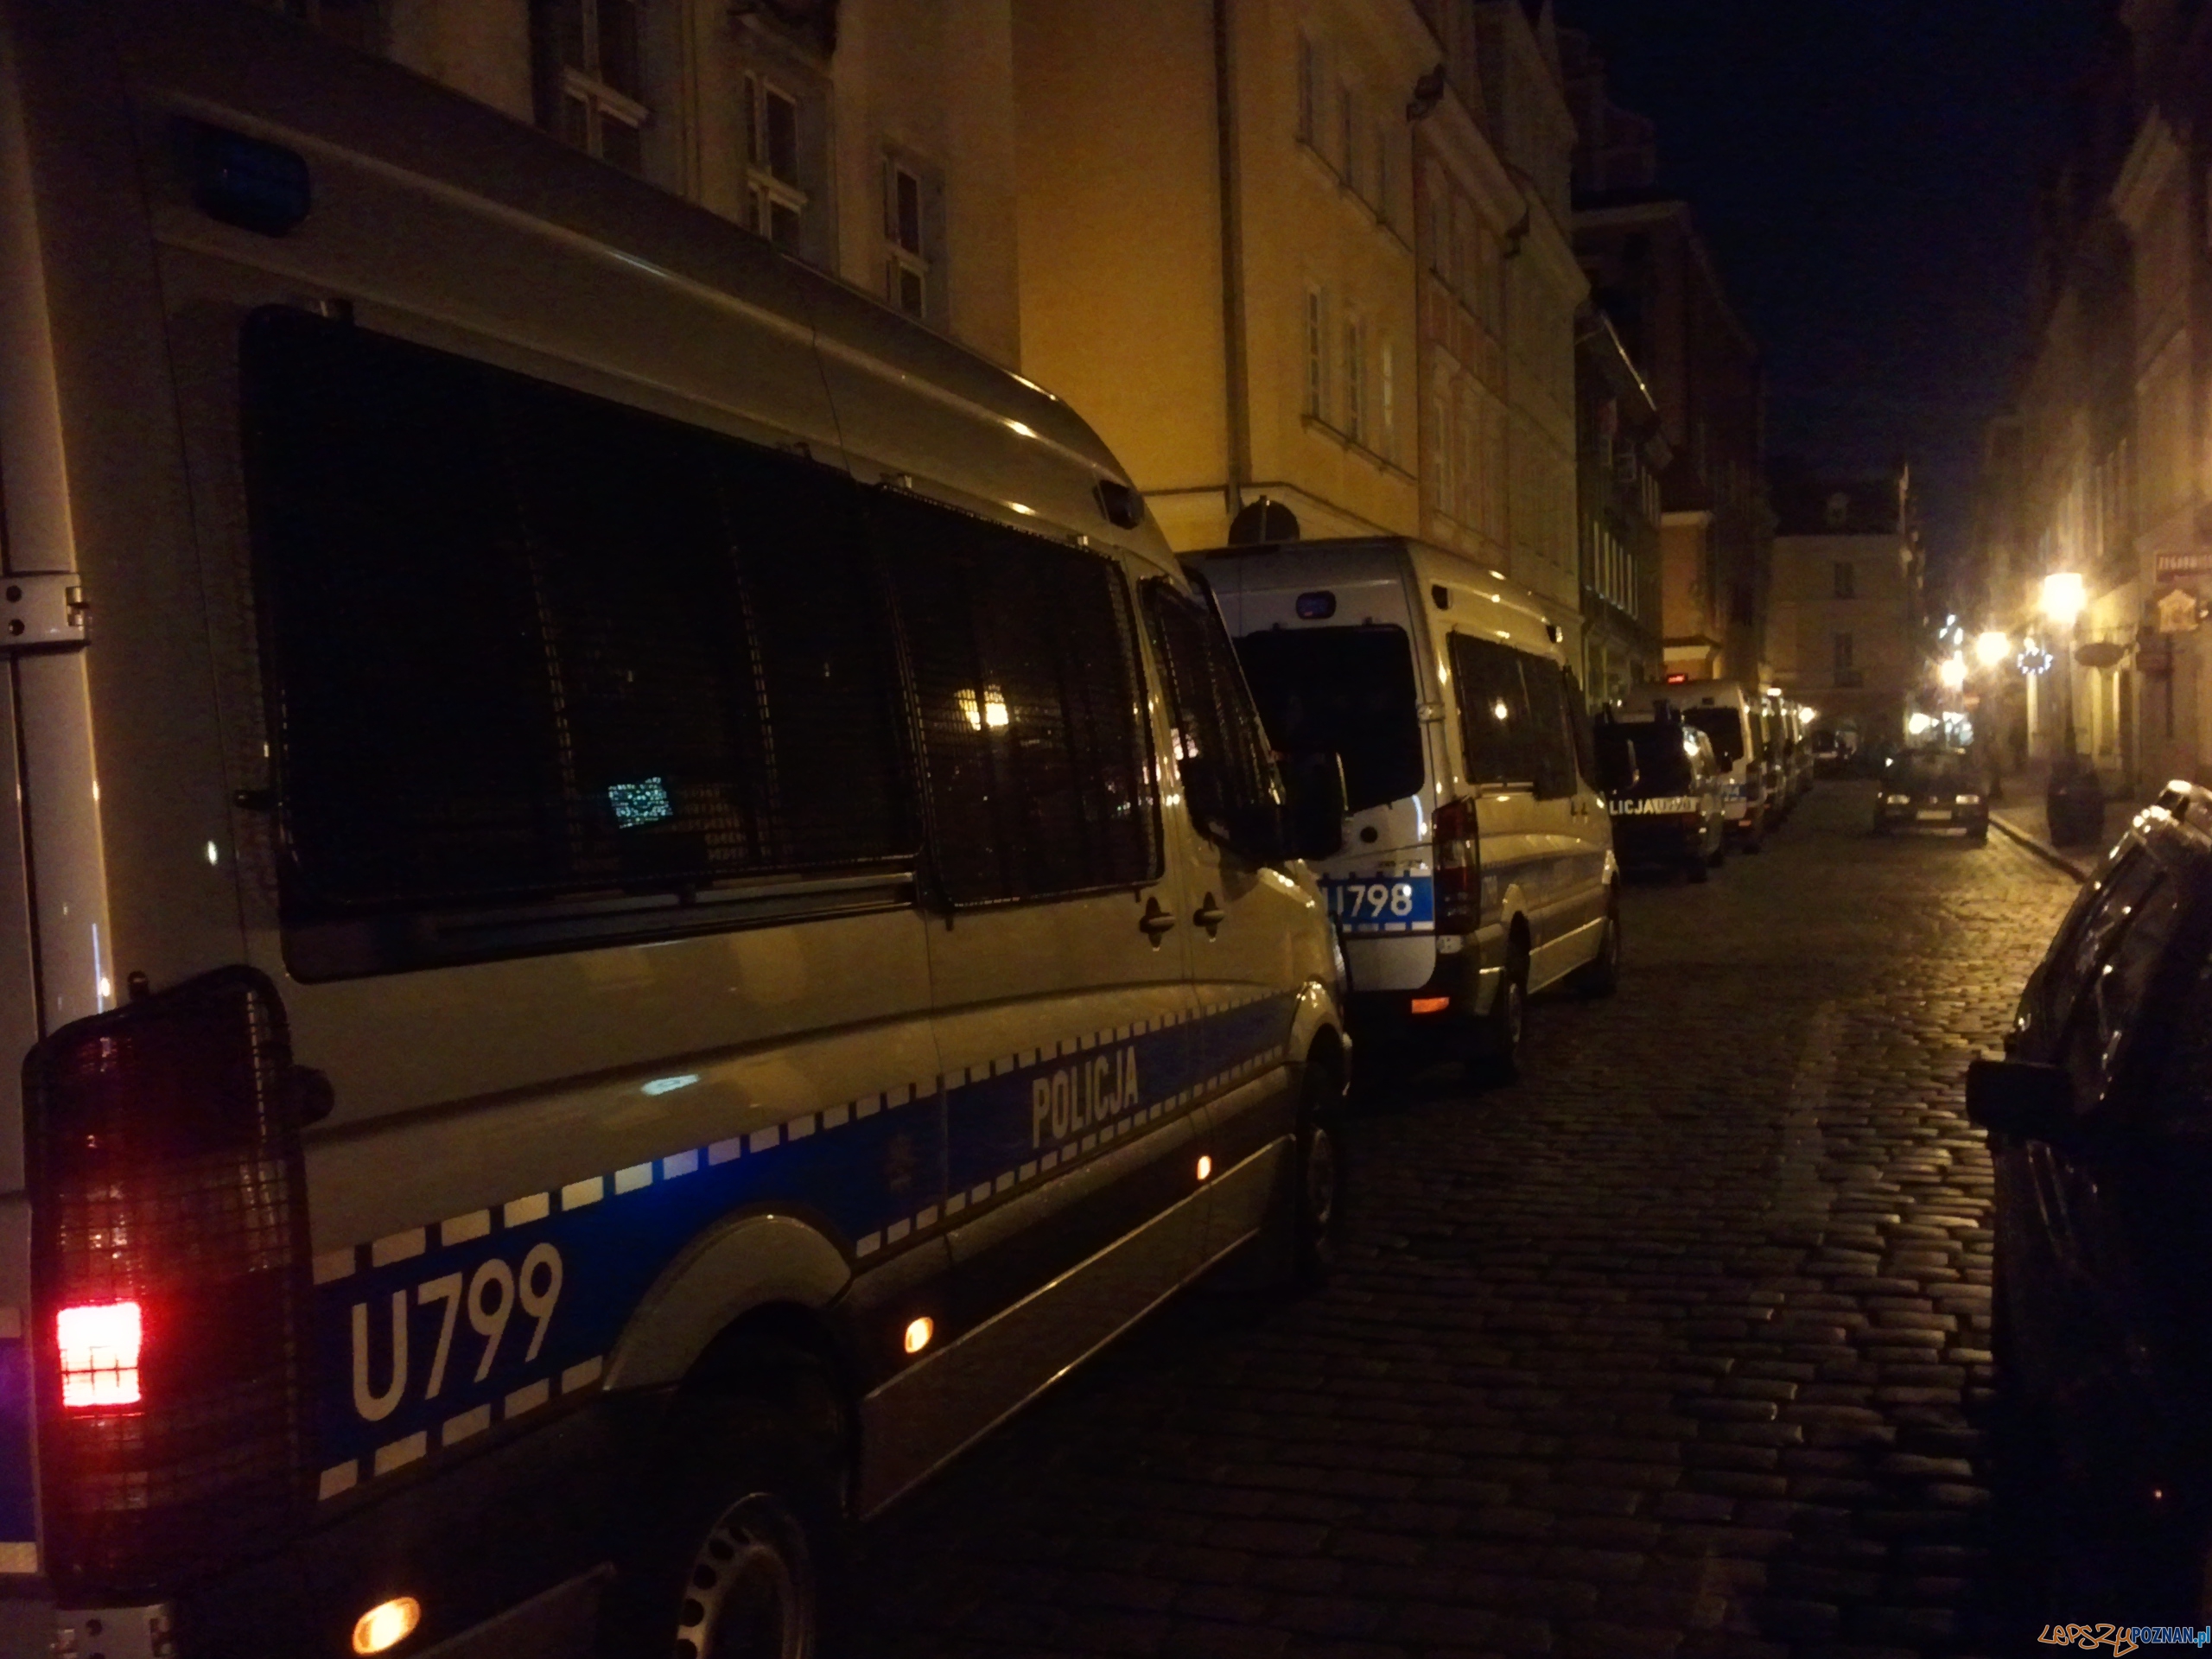 Policja gotowa na przybycie kibiców po meczu na Stary Rynek  Foto: lepszyPOZNAN.pl / gsm